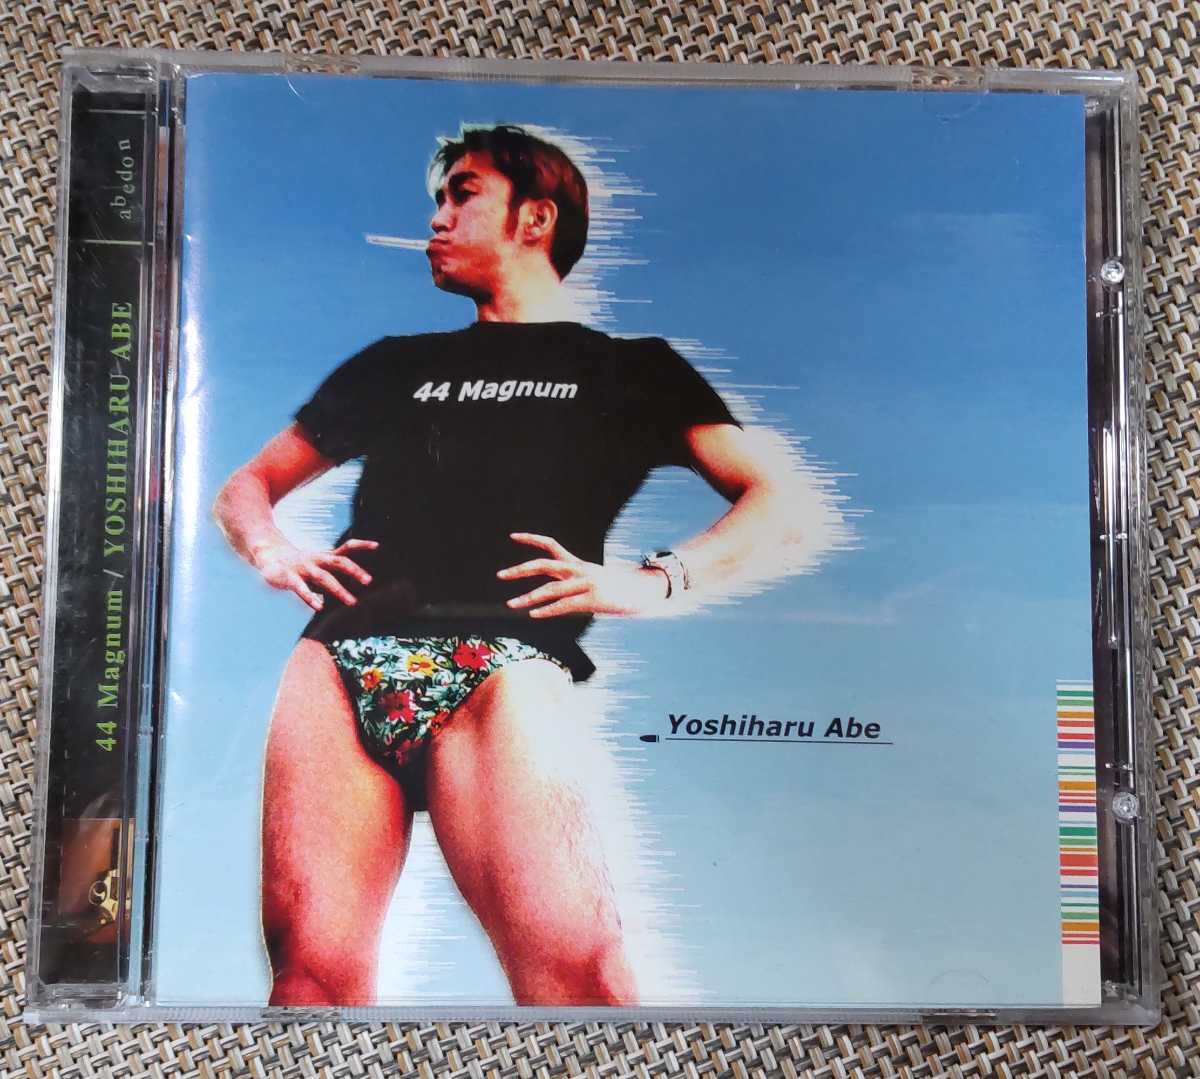 ! Abe Yoshiharu [44Magnum]CD!